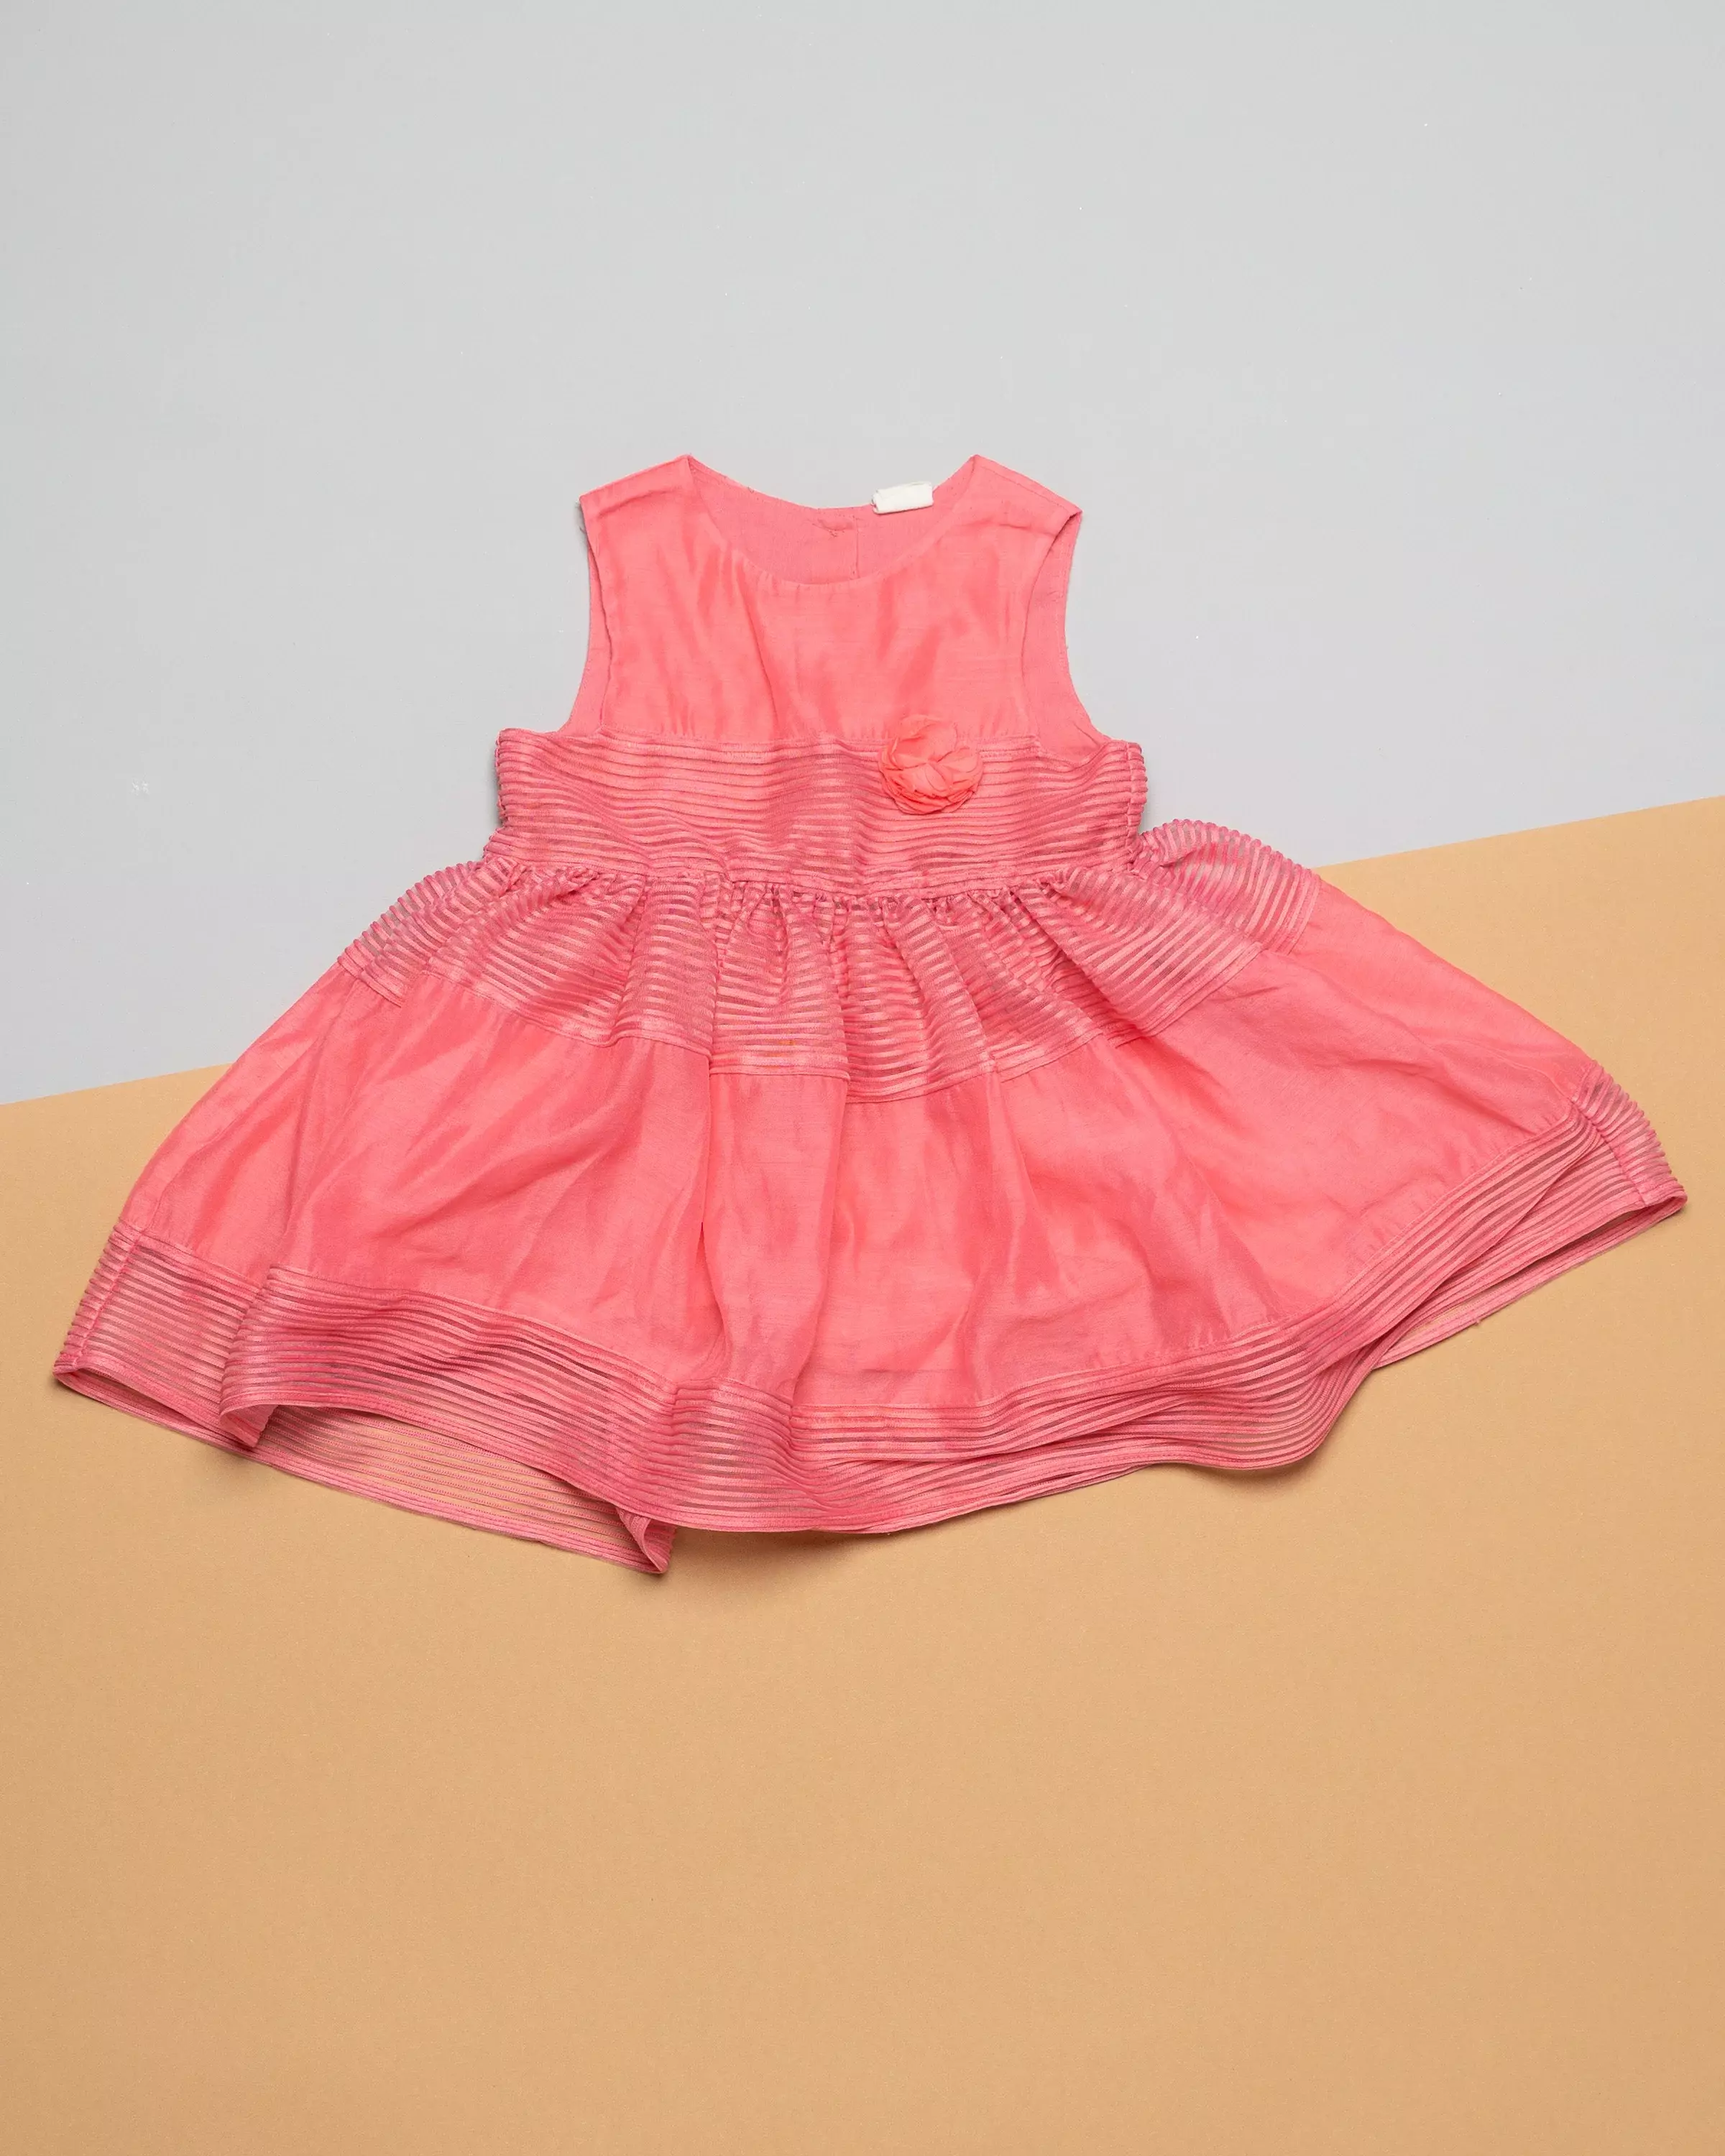 Kleid Gr. 86 – Pink mit etwas Tüll